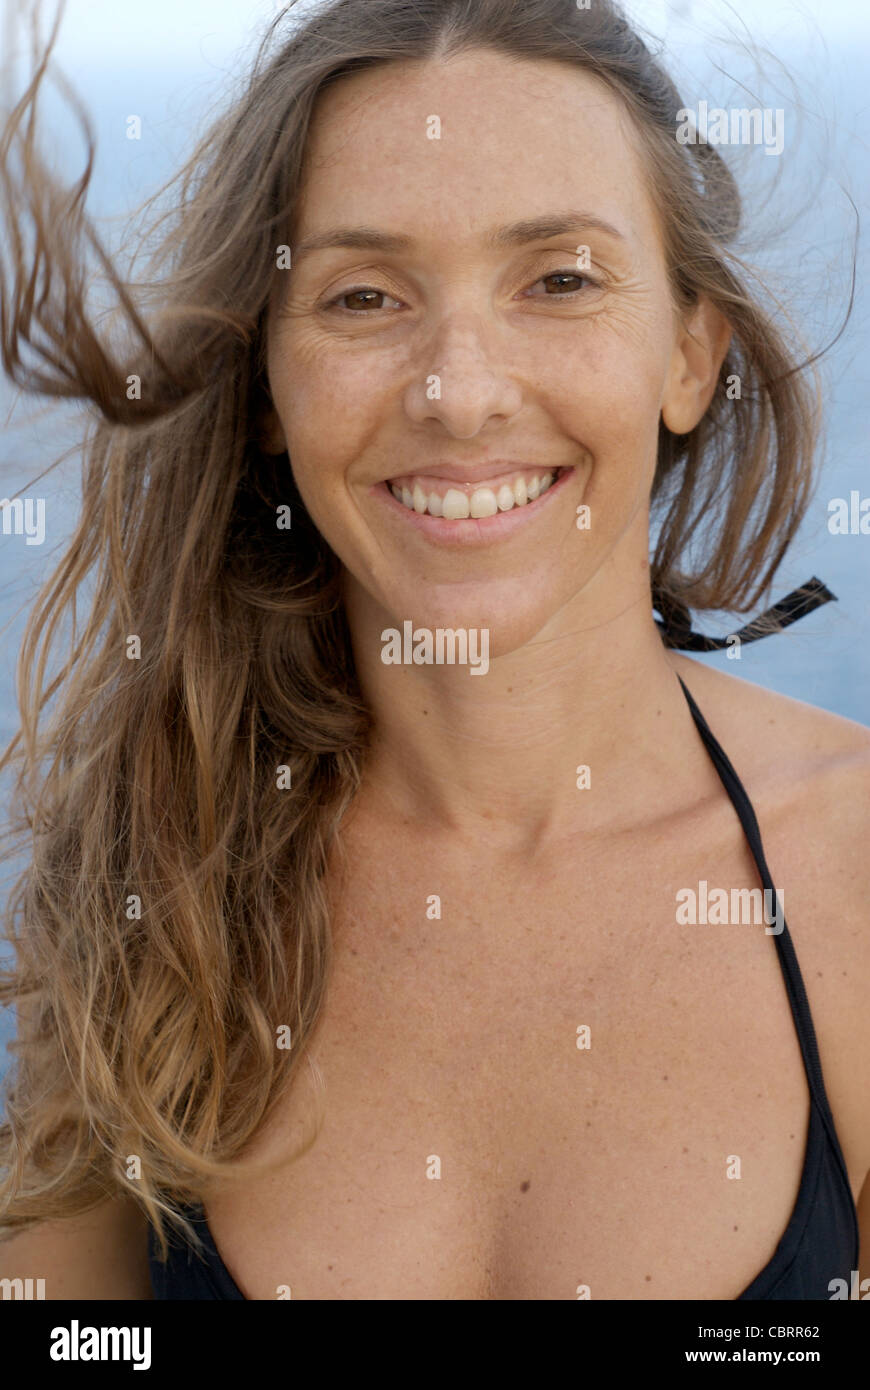 Model freigegeben: Attraktive junge Frau, Künstlerin Lena Tancredi, praktizieren Yoga vor dem Mittelmeer, Ibiza, Spanien - Foto von Nano Calvo Stockfoto